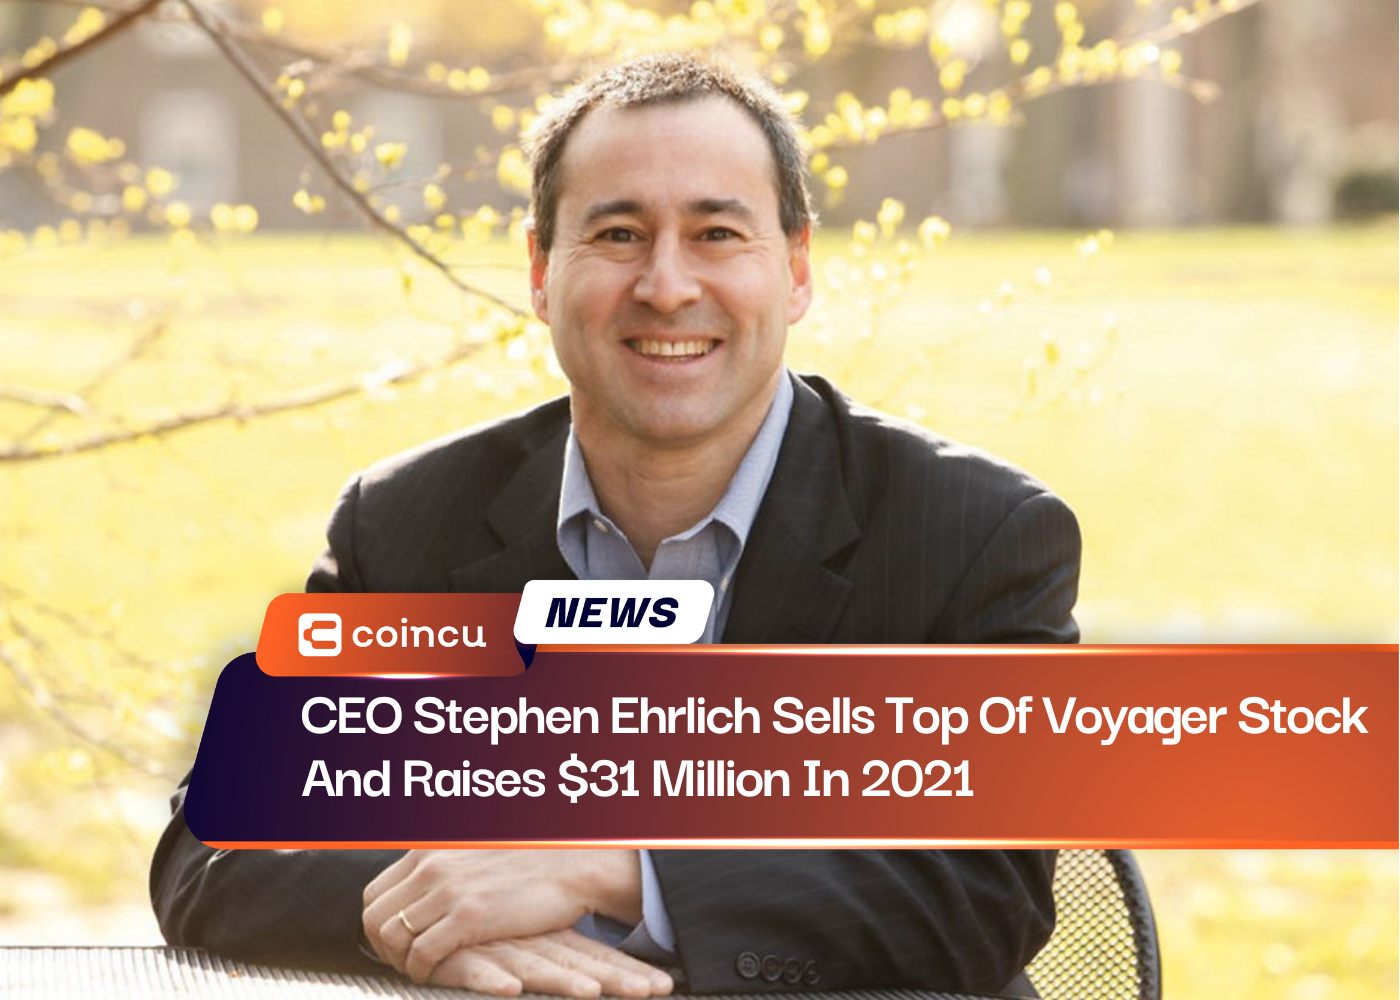 El director ejecutivo Stephen Ehrlich vende la parte superior de las acciones de Voyager y recauda 31 millones de dólares en 2021